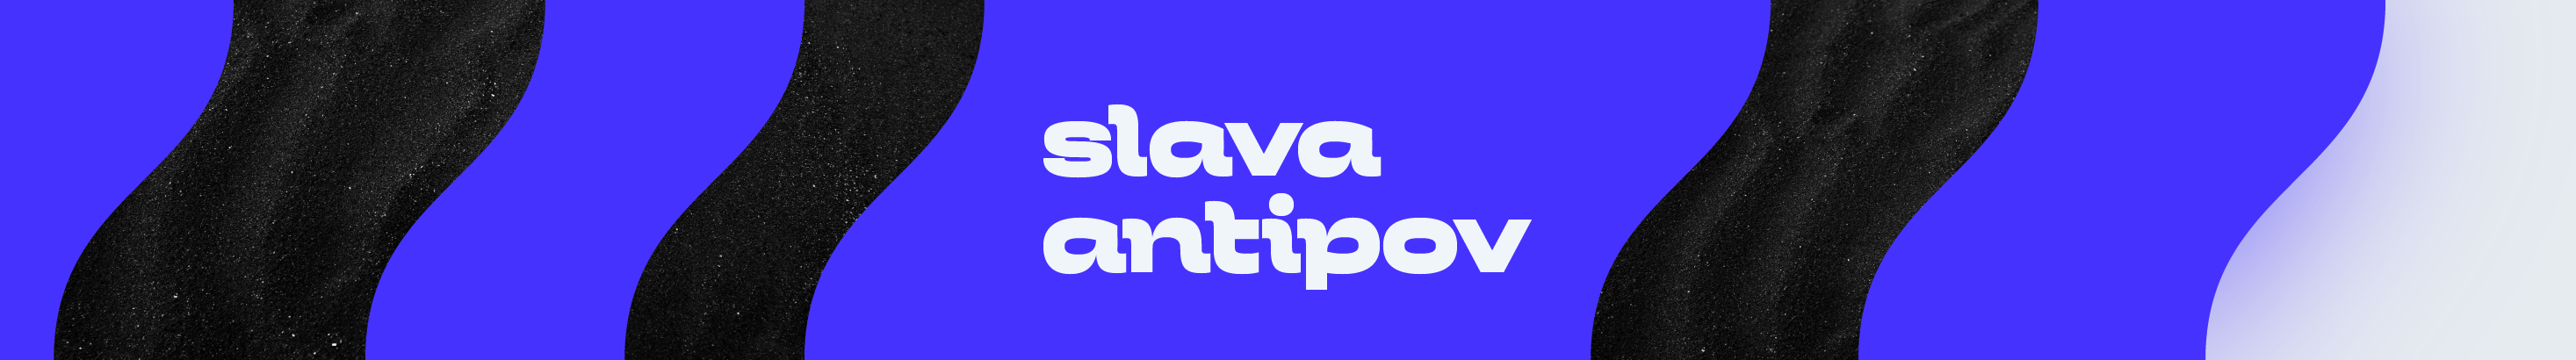 Slava Antipov's profile banner